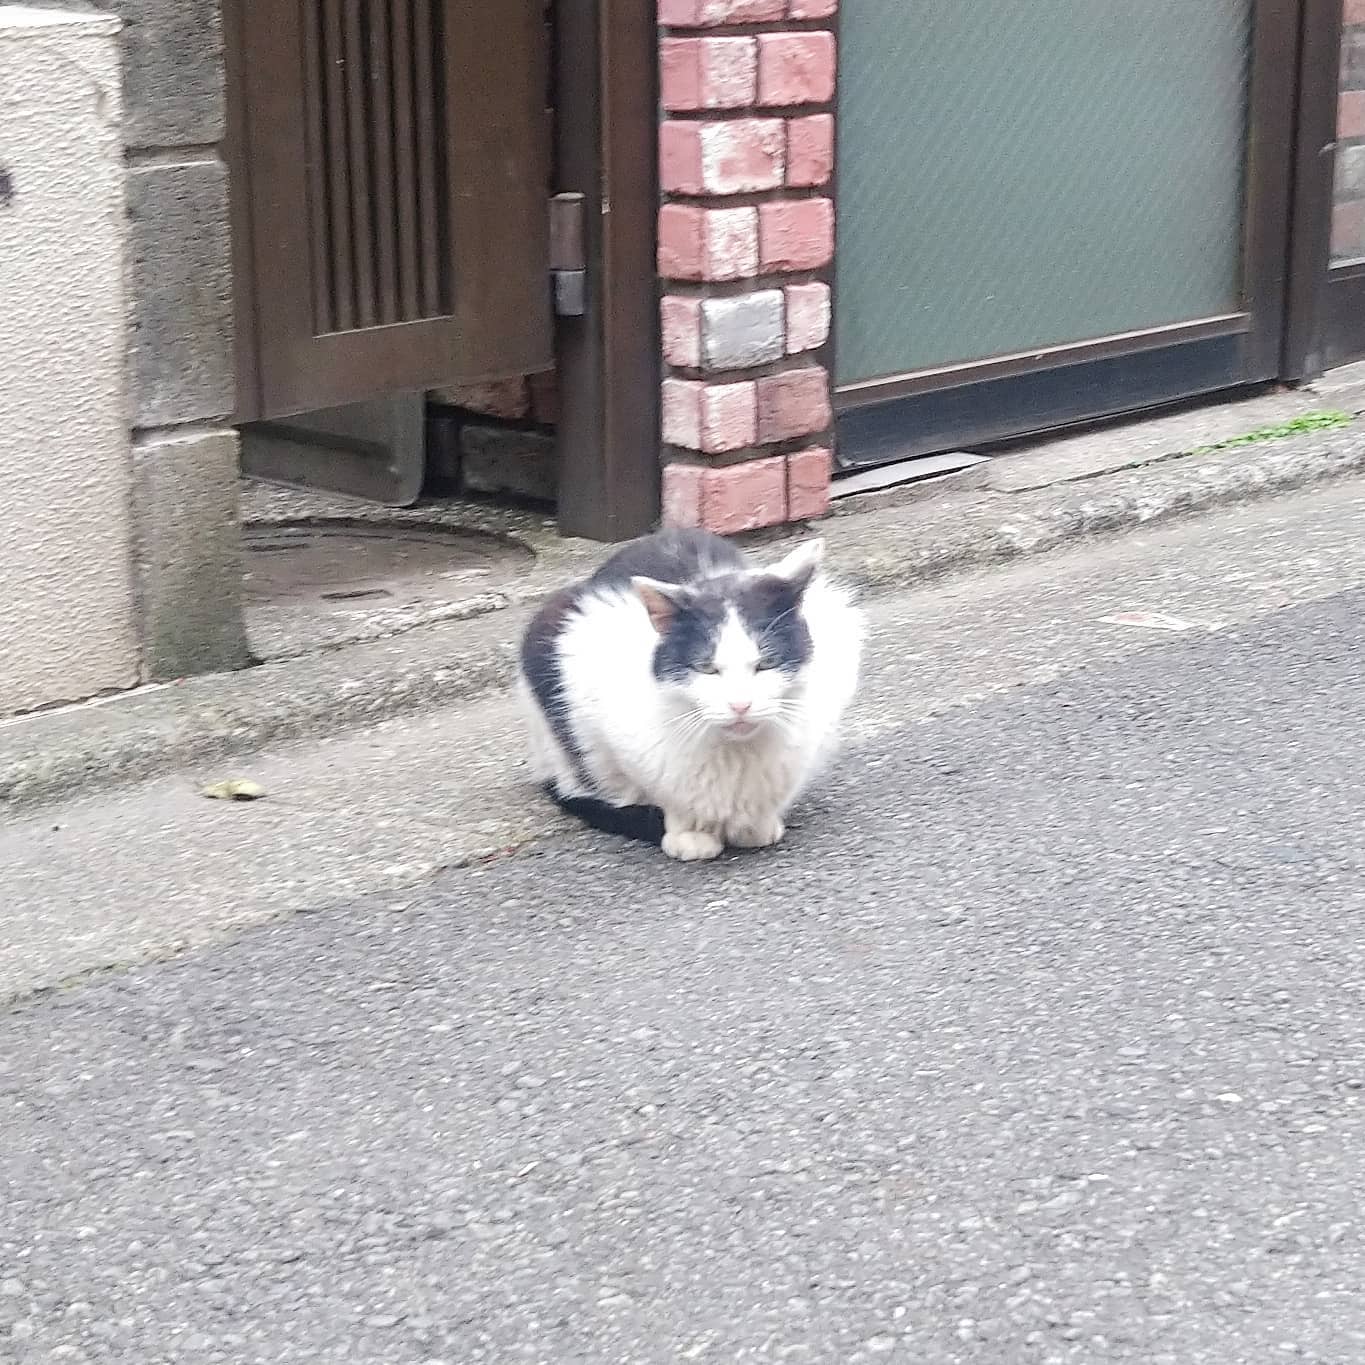 #武蔵小山 #猫 えぇ面構えしとる… 駅前に  #りゅえる って飲み屋街があった頃は猫沢山見かけたんだけどねぇ。今は、タワマンできちゃって綺麗になっちゃったね。今や猫はドラクエウォーク中に稀に出会える珍獣になってしまいましたな #武蔵小山の猫コレクション